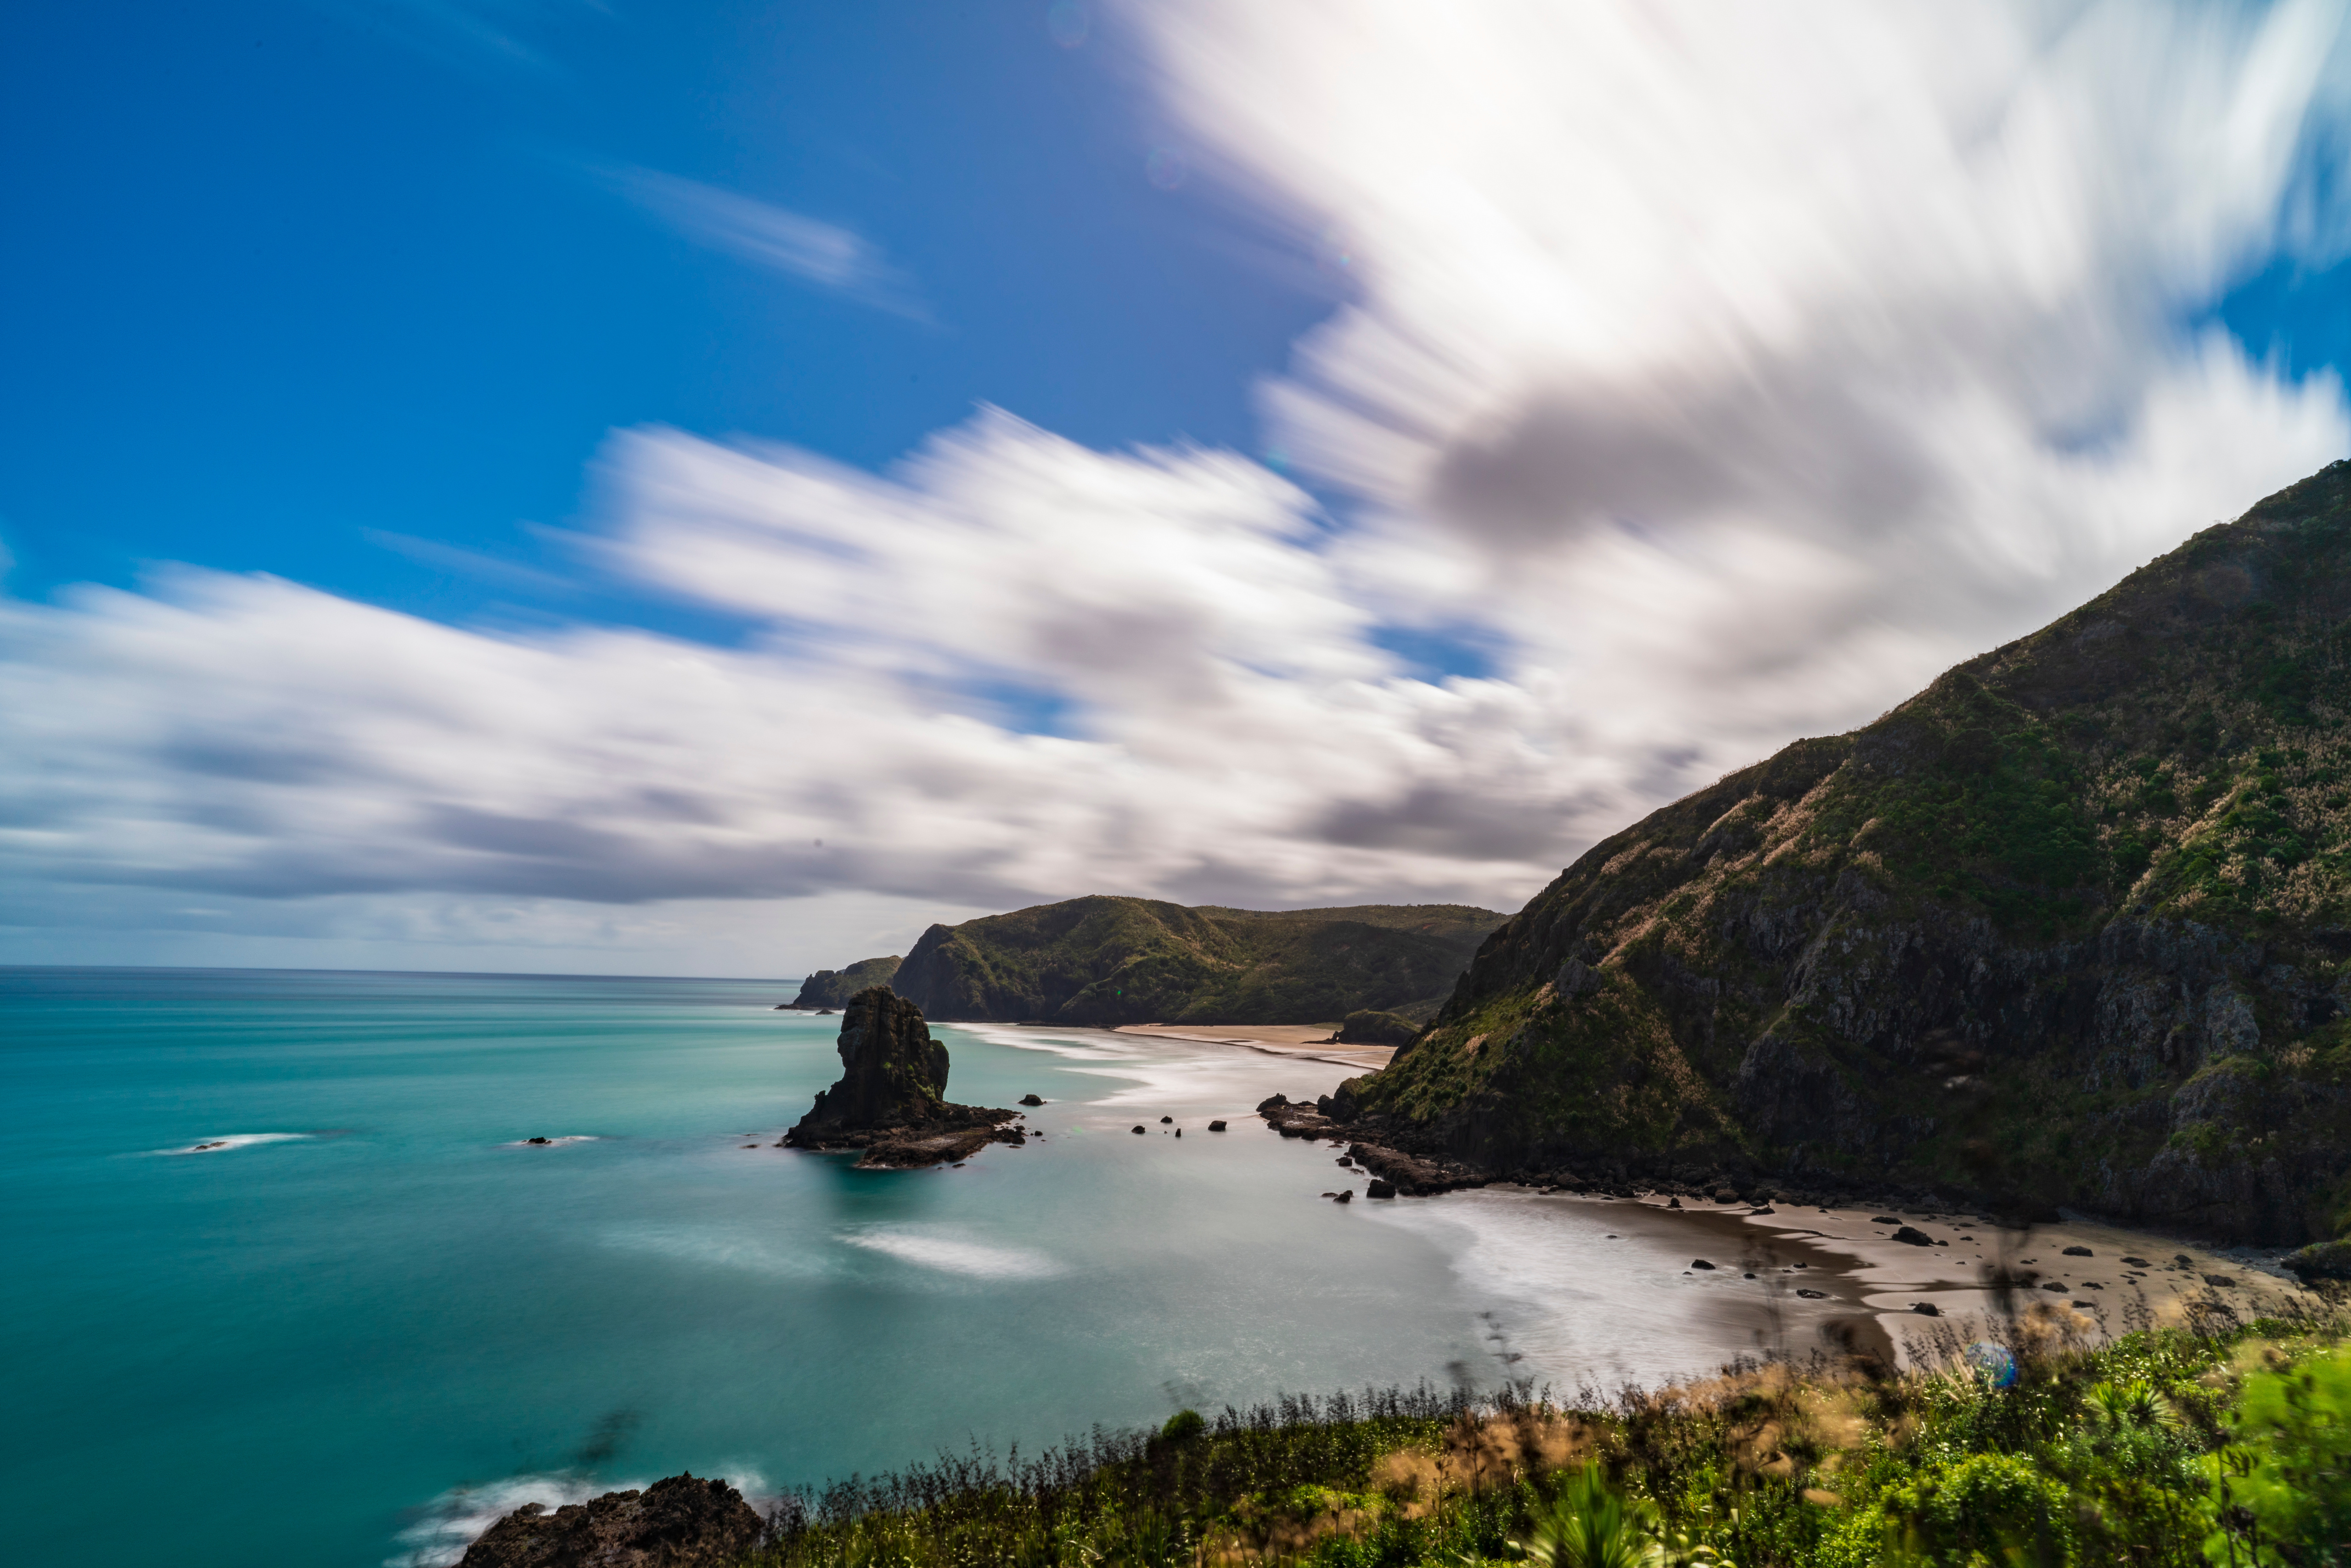 Обои для рабочего стола Новая Зеландия Piha Beach скалы Природа Побережье Облака 5120x3415 Утес скале Скала берег облако облачно